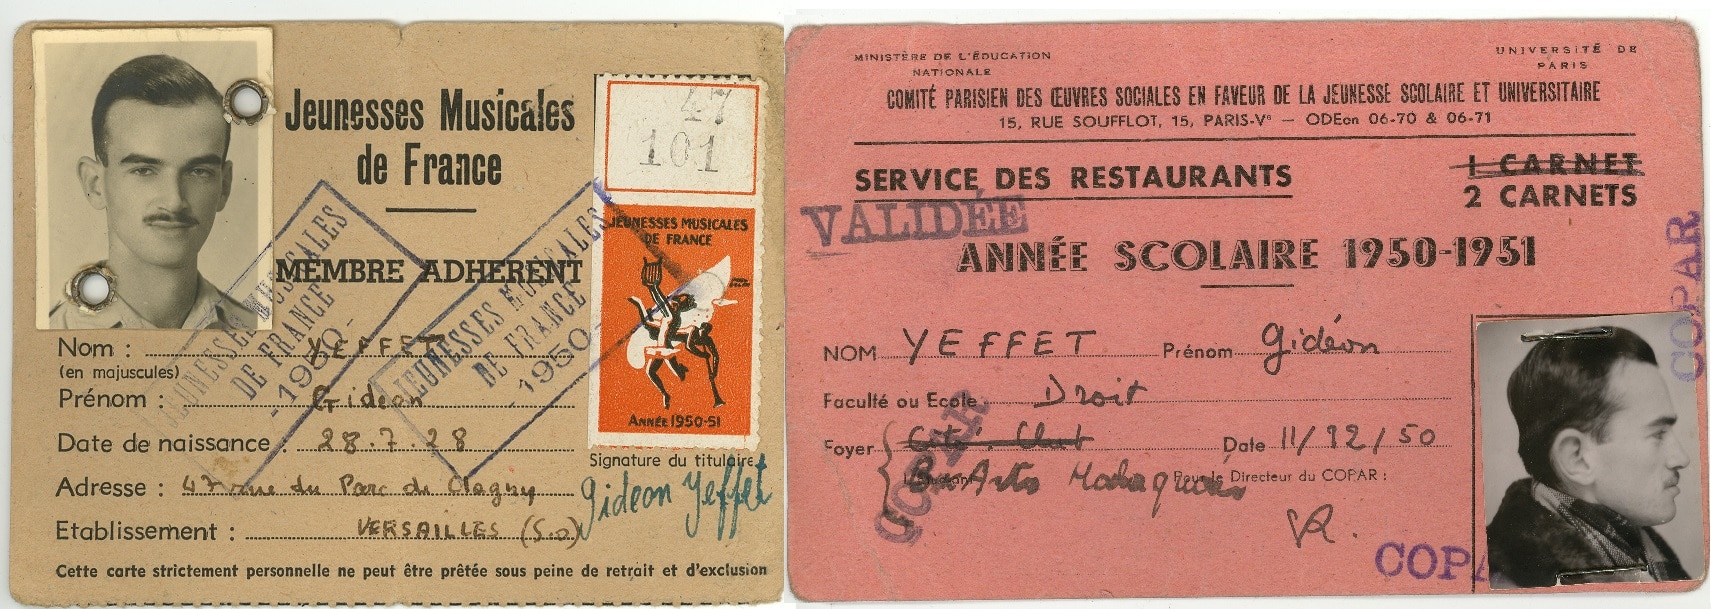 Gideon Japhet's student cards from Versailles